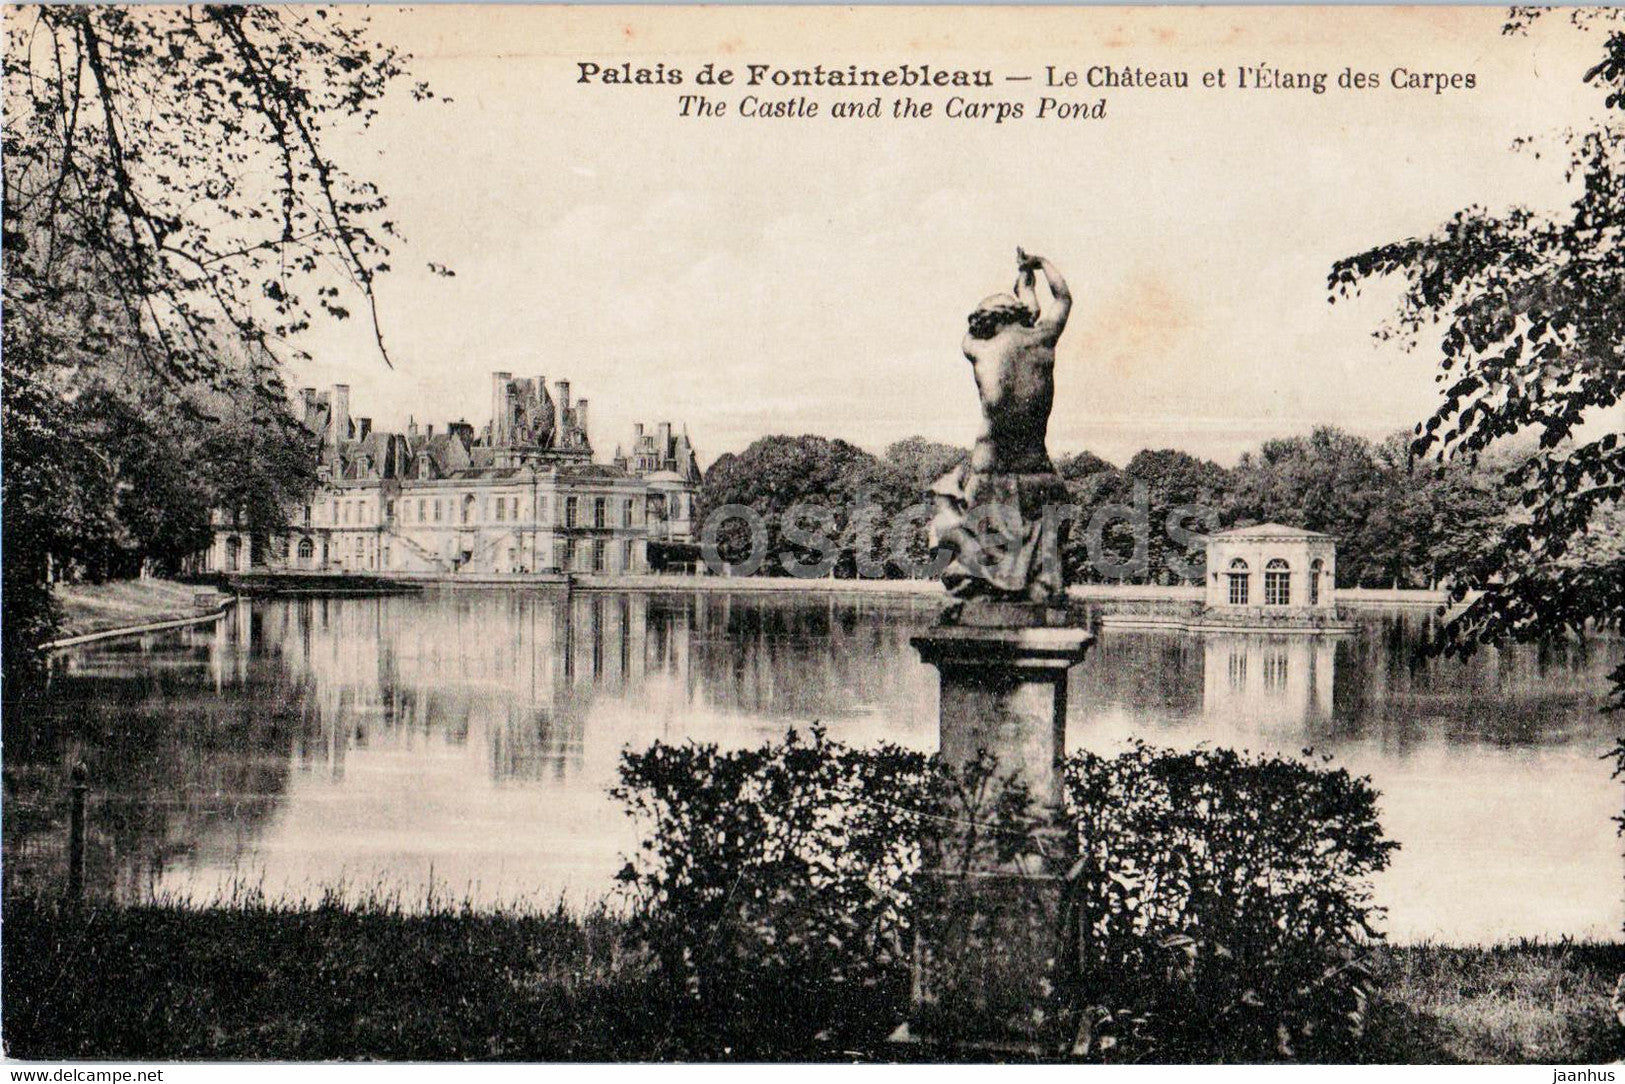 Palais de Fontainebleau - Le Chateau et l'Etang des Carpes - The Castle - old postcard - France - unused - JH Postcards